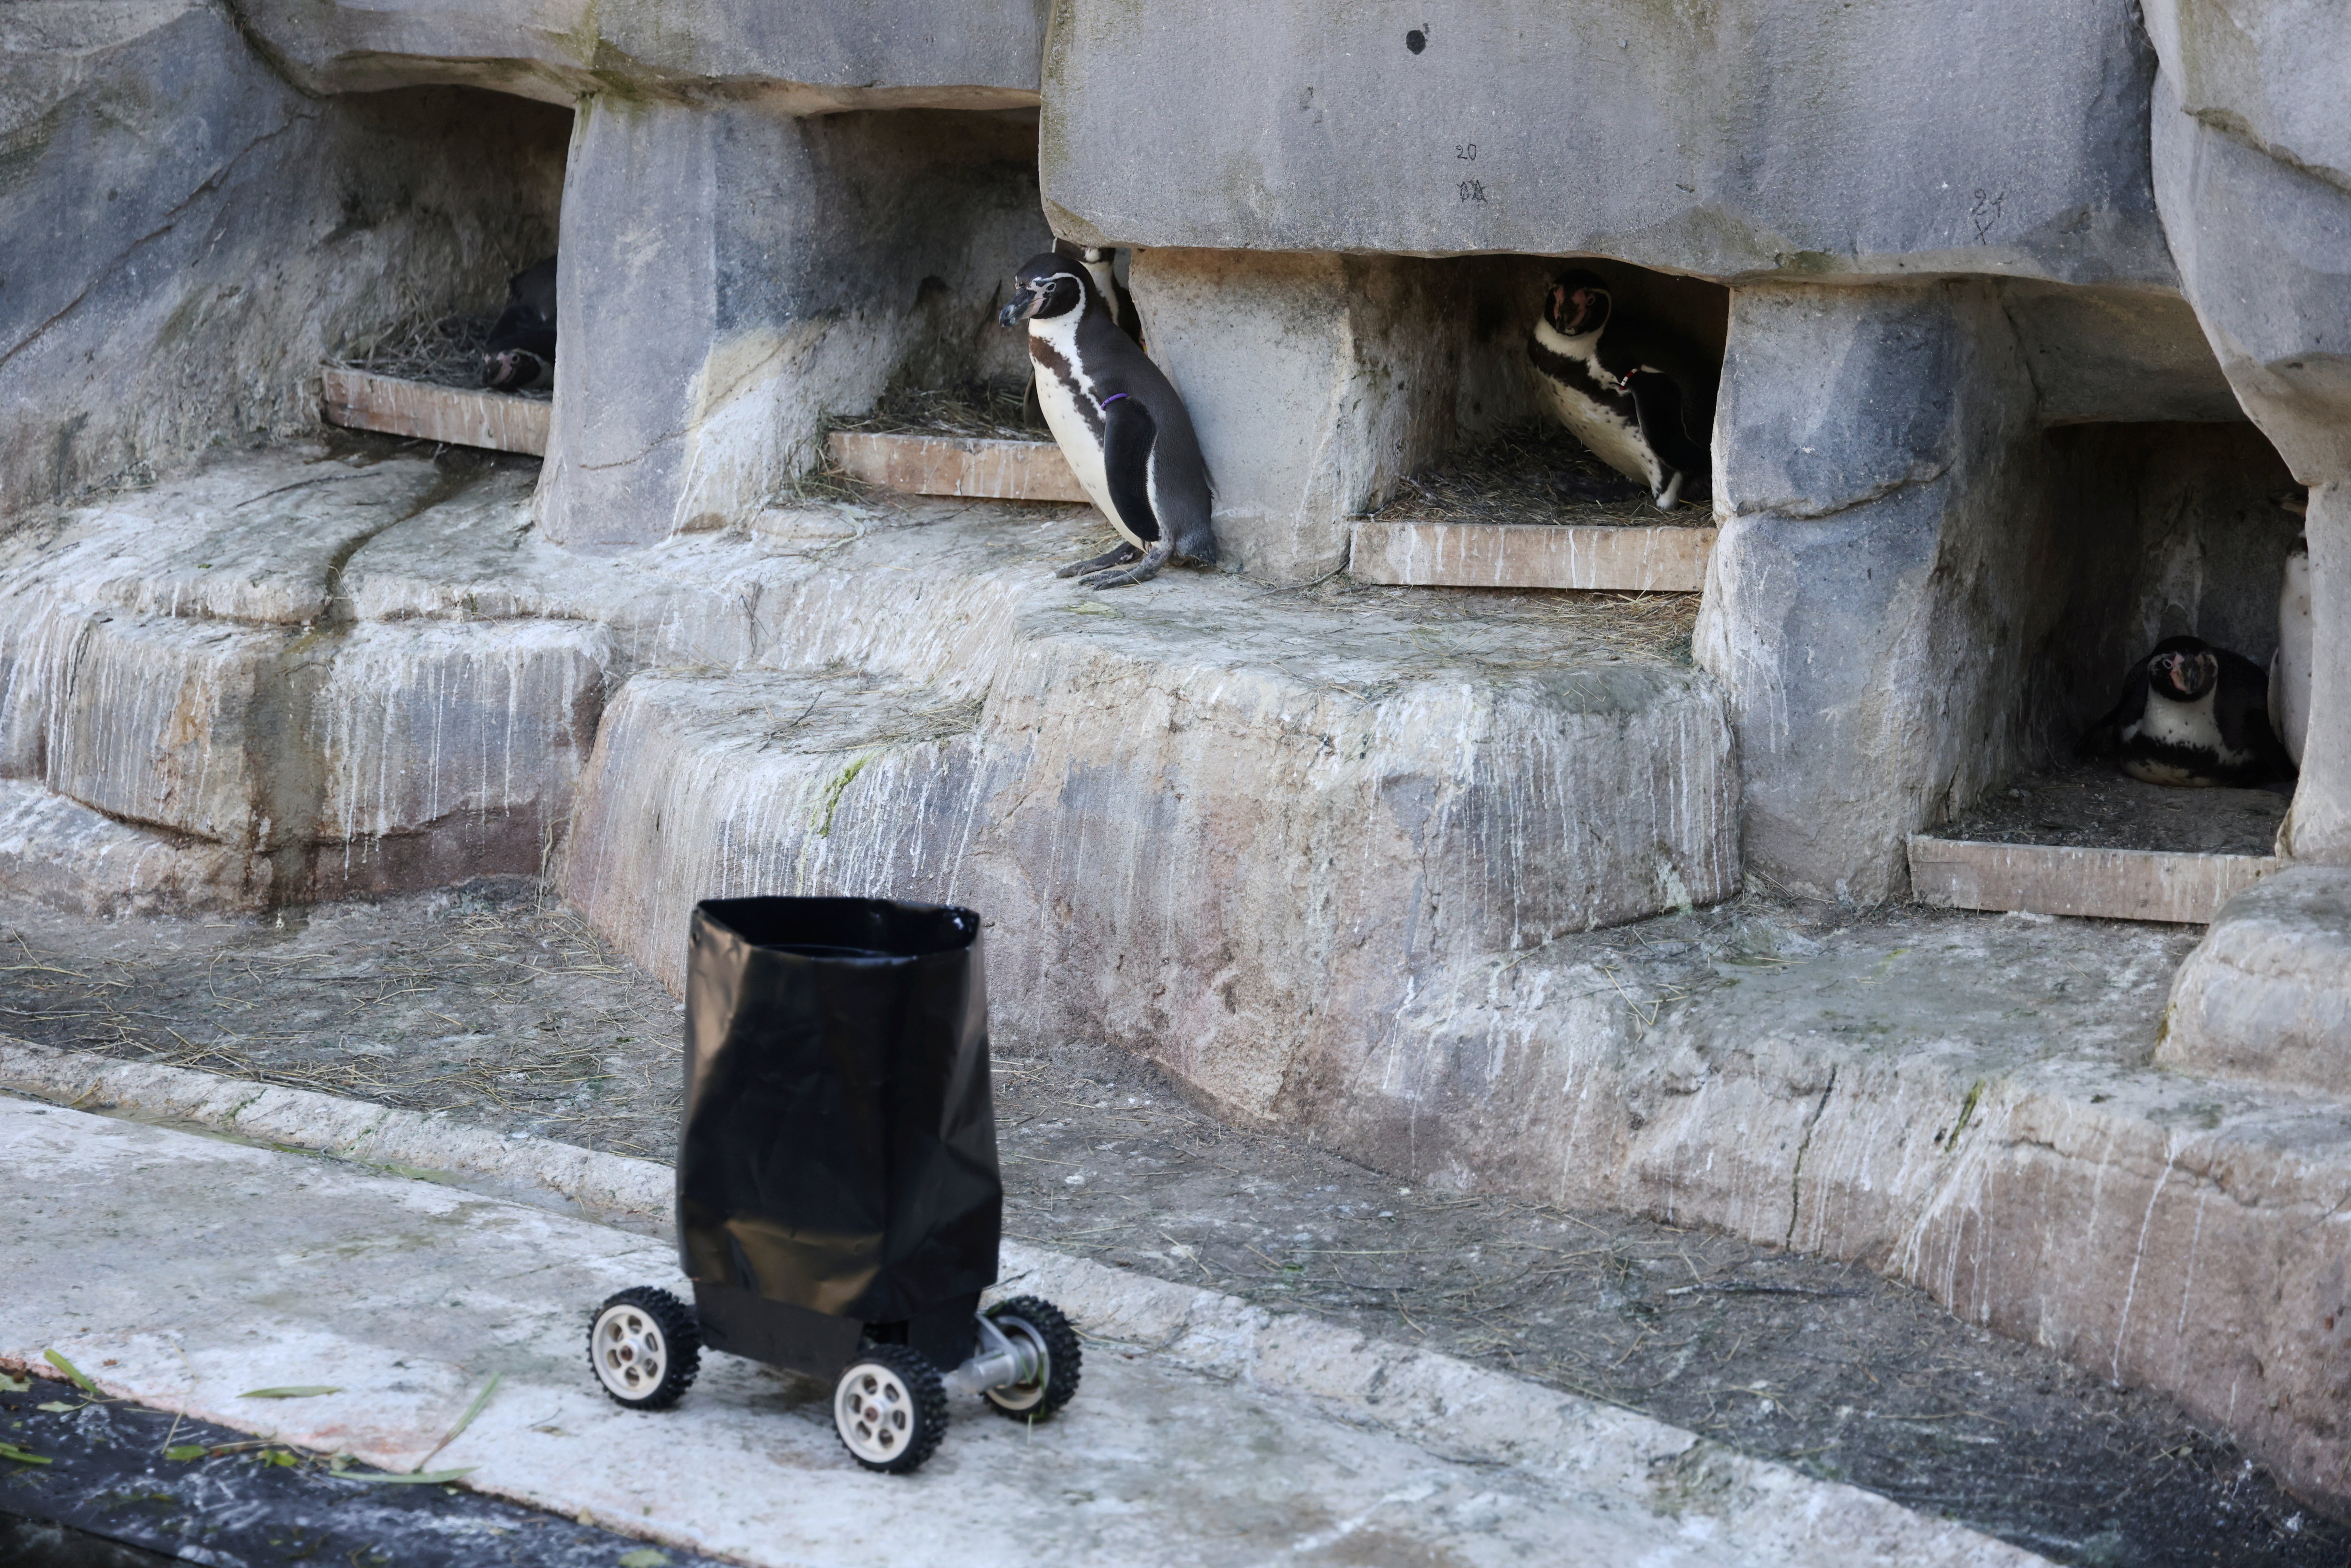 Un robot télécommandé est utilisé pour approcher les manchots de Humbolt, dont une colonie vit dans un bassin au zoo de Vincennes (Paris XIIe). LP/Jean-Baptiste Quentin